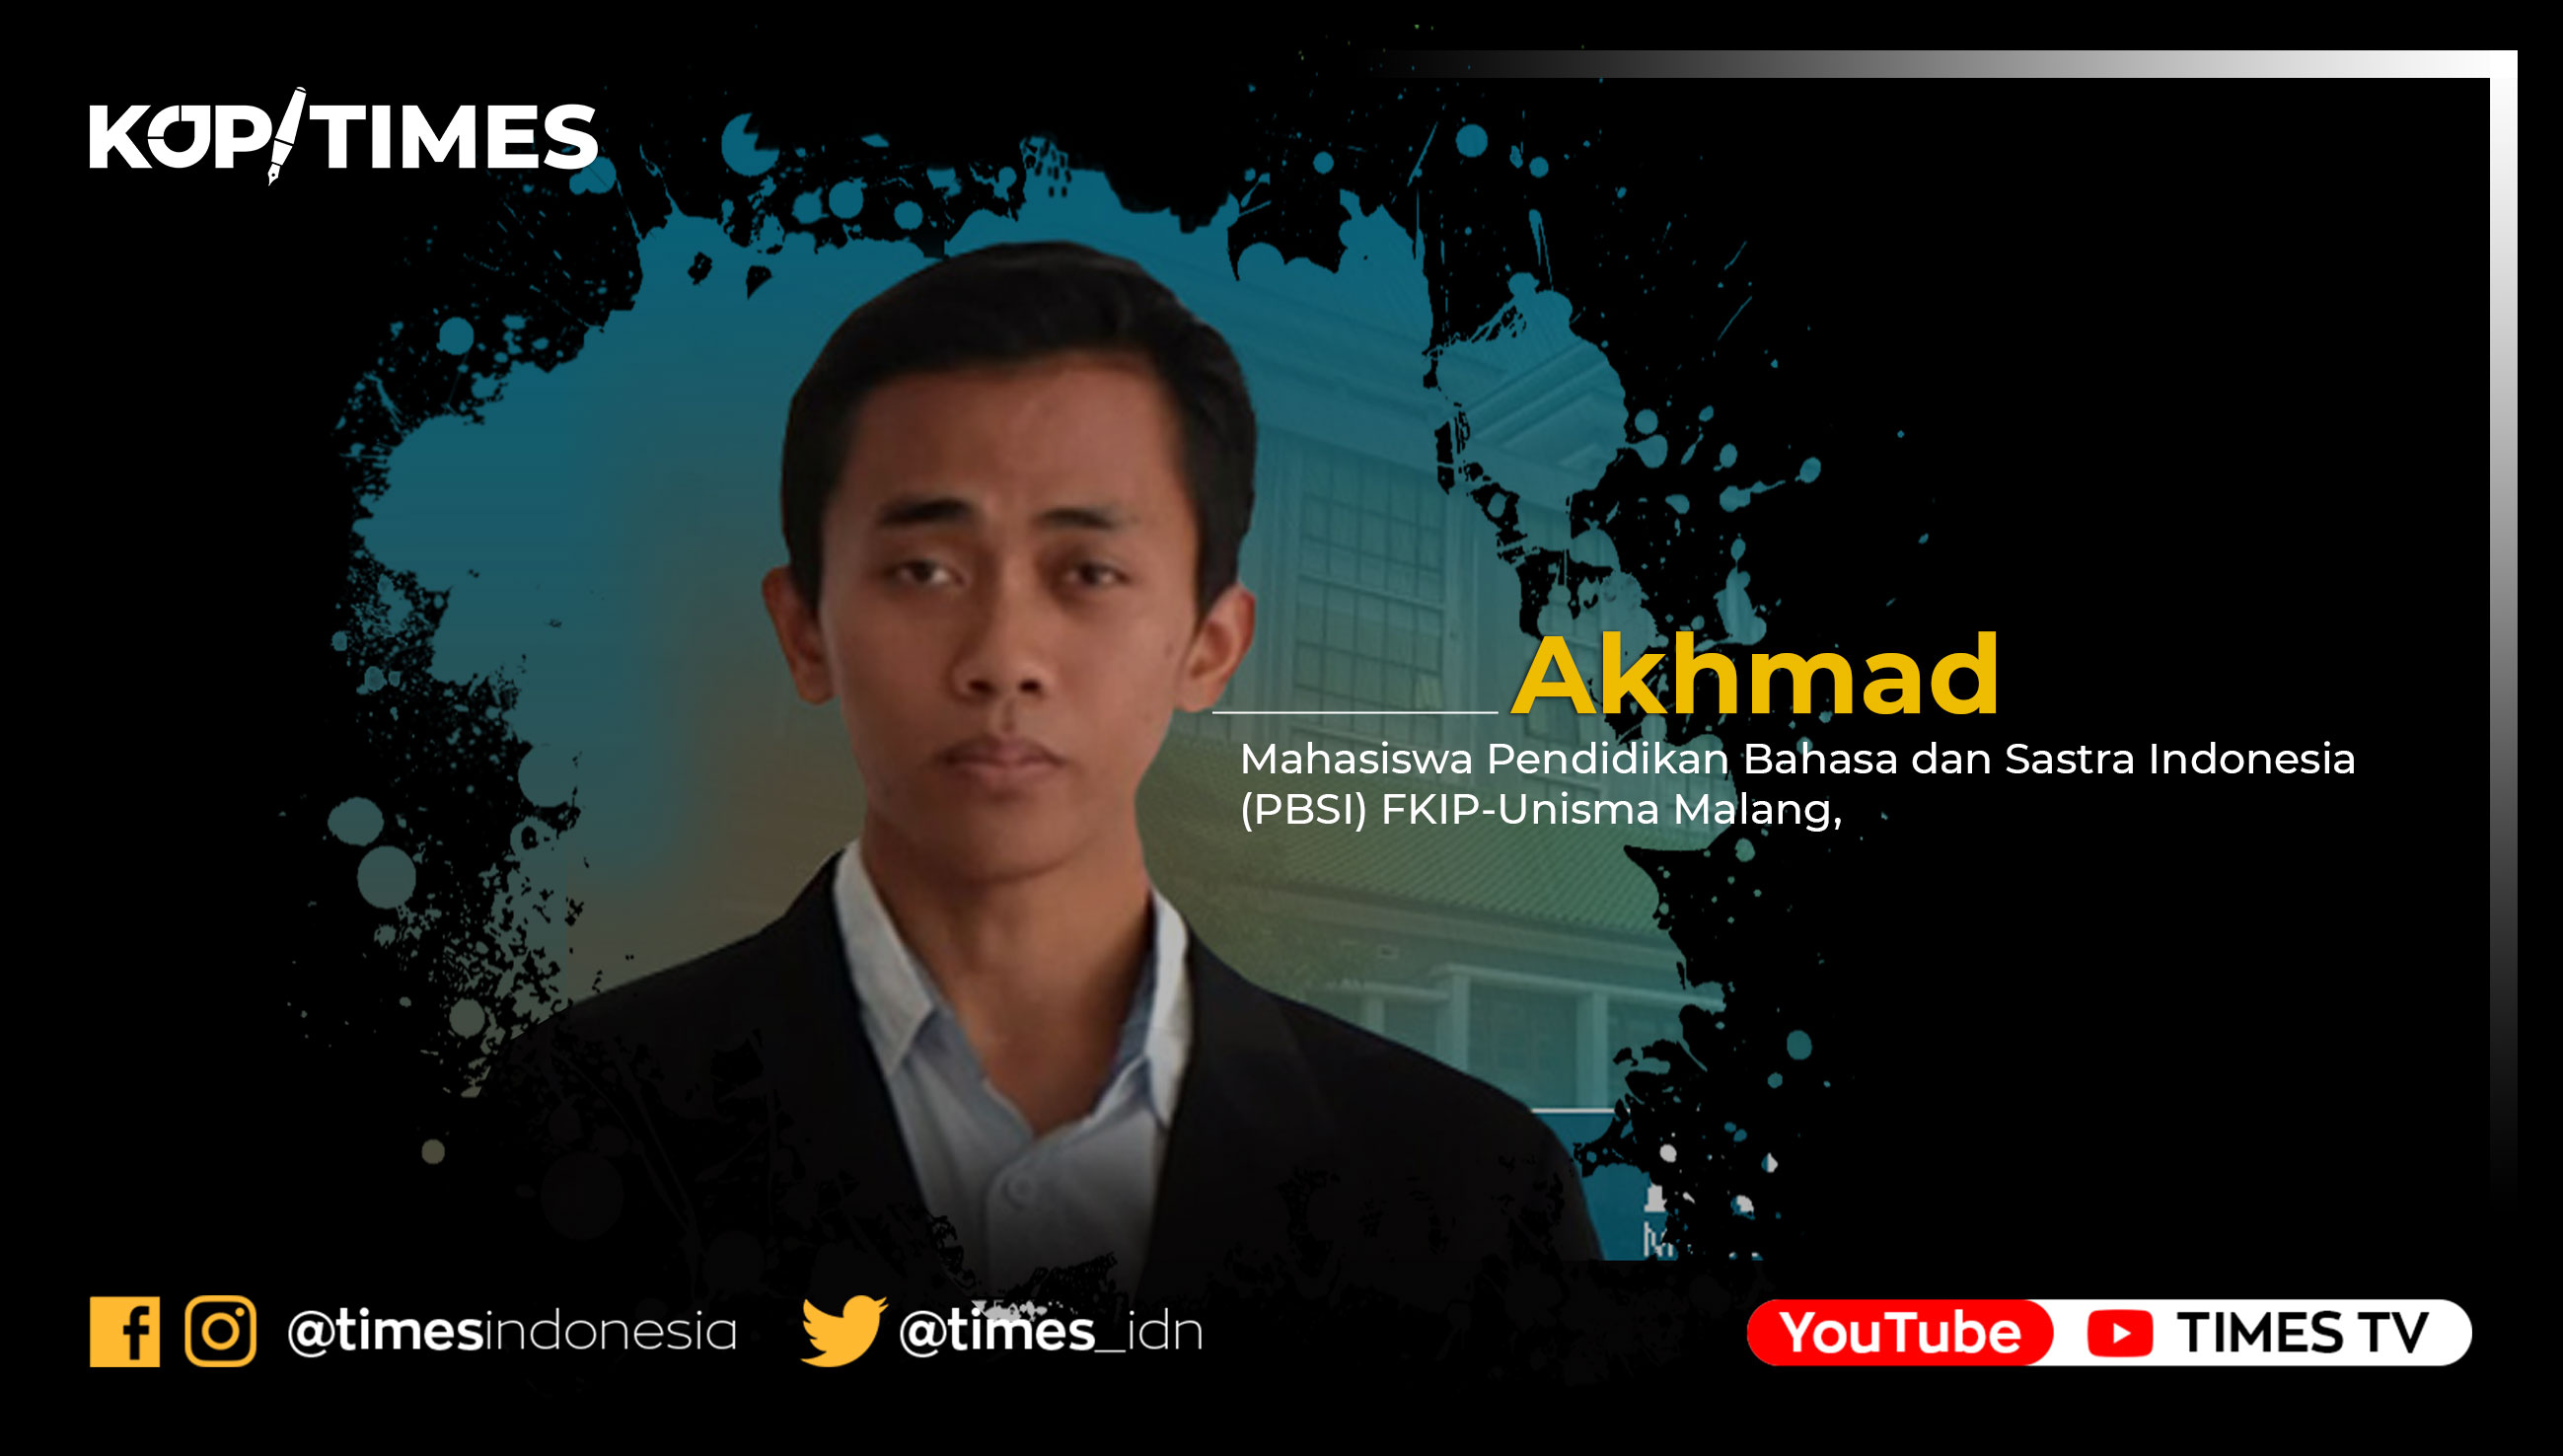 Akhmad, Mahasiswa Pendidikan Bahasa dan Sastra Indonesia FKIP, Universitas Islam Malang (UNISMA).